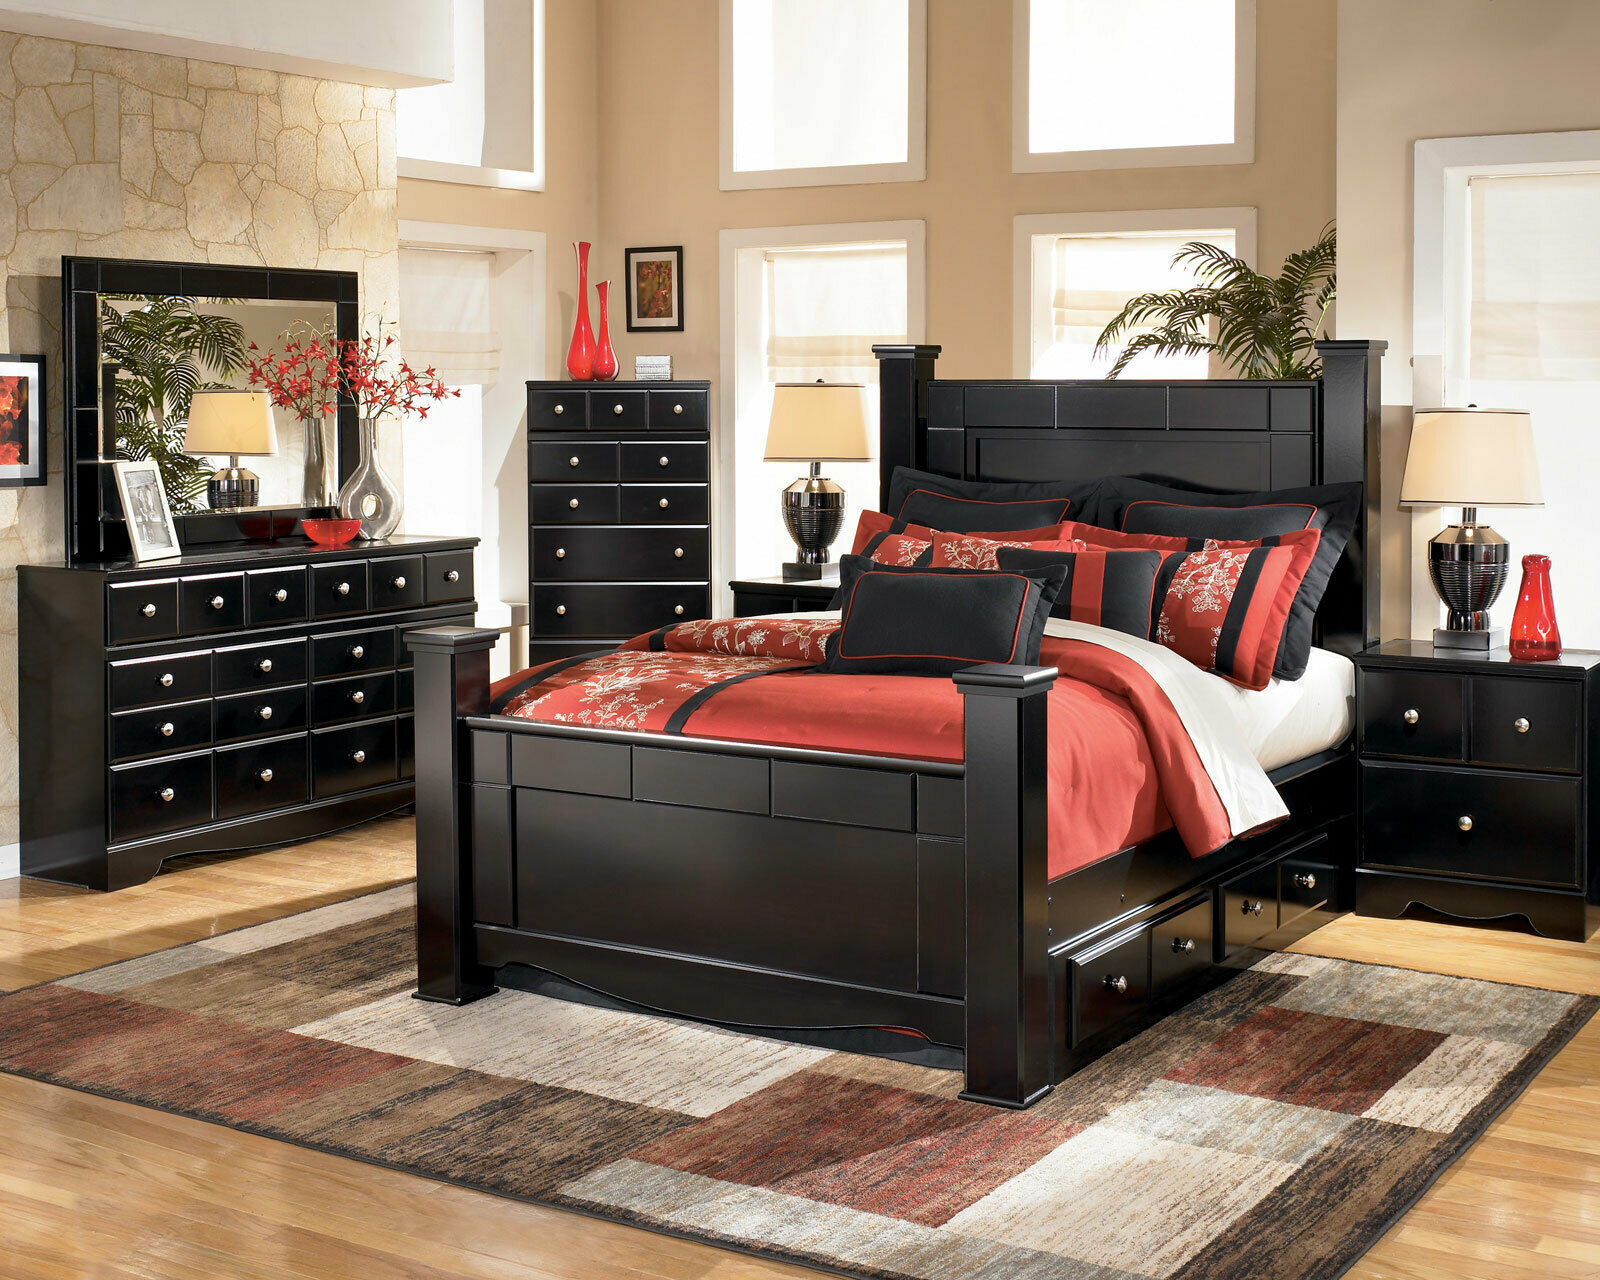 black king size bedroom furniture